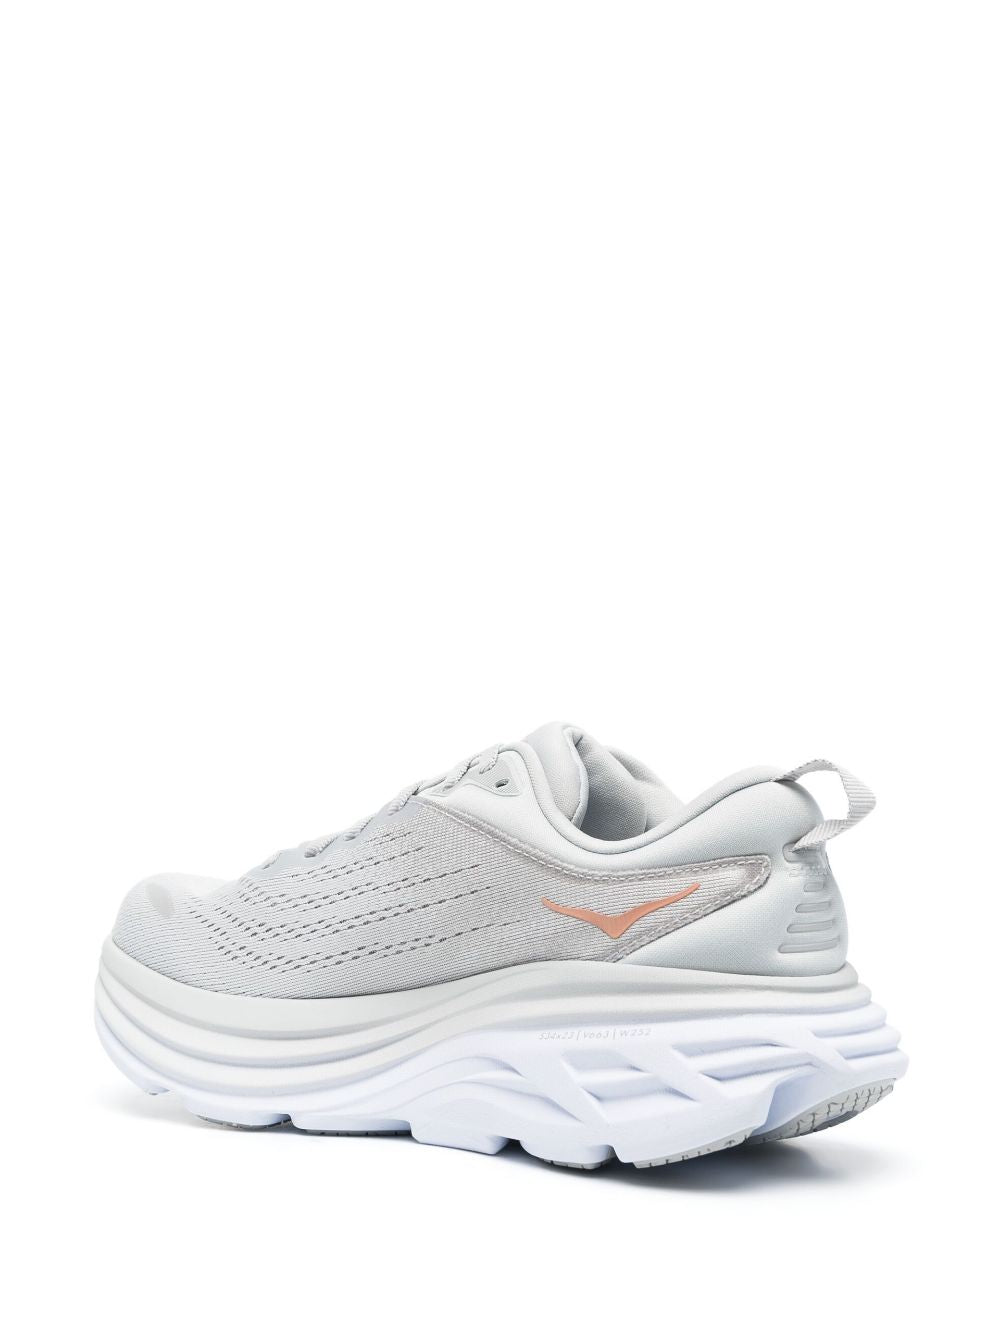 Grey low-top running sneakers